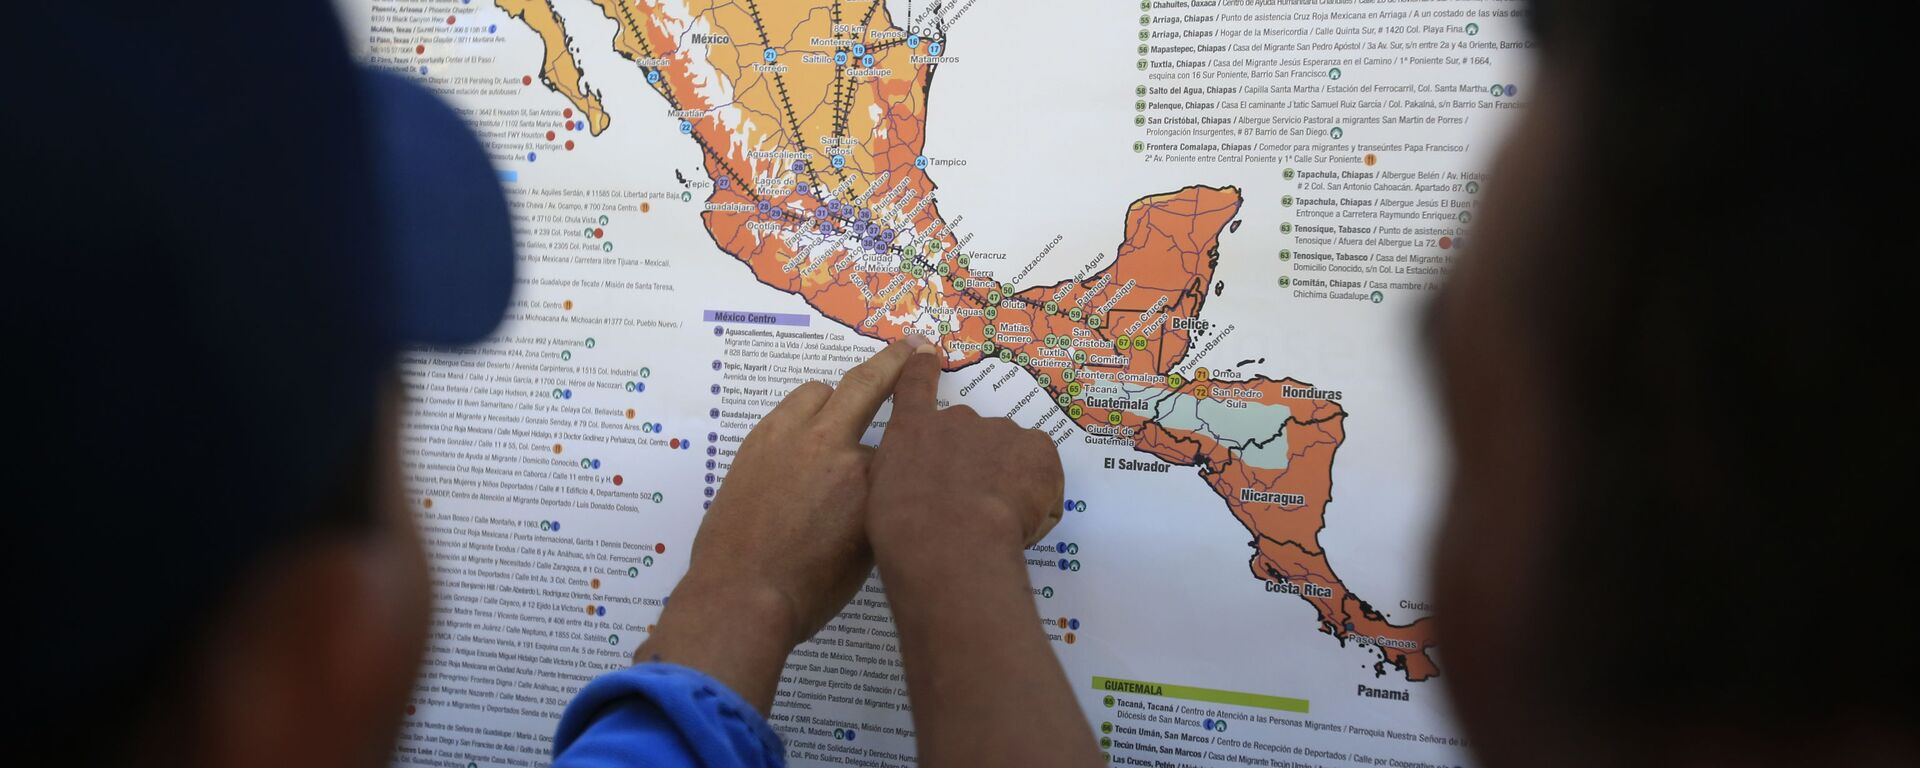 Migrantes centroamericanos planean su recorrido con un mapa en Ciudad de México - Sputnik Mundo, 1920, 16.07.2020